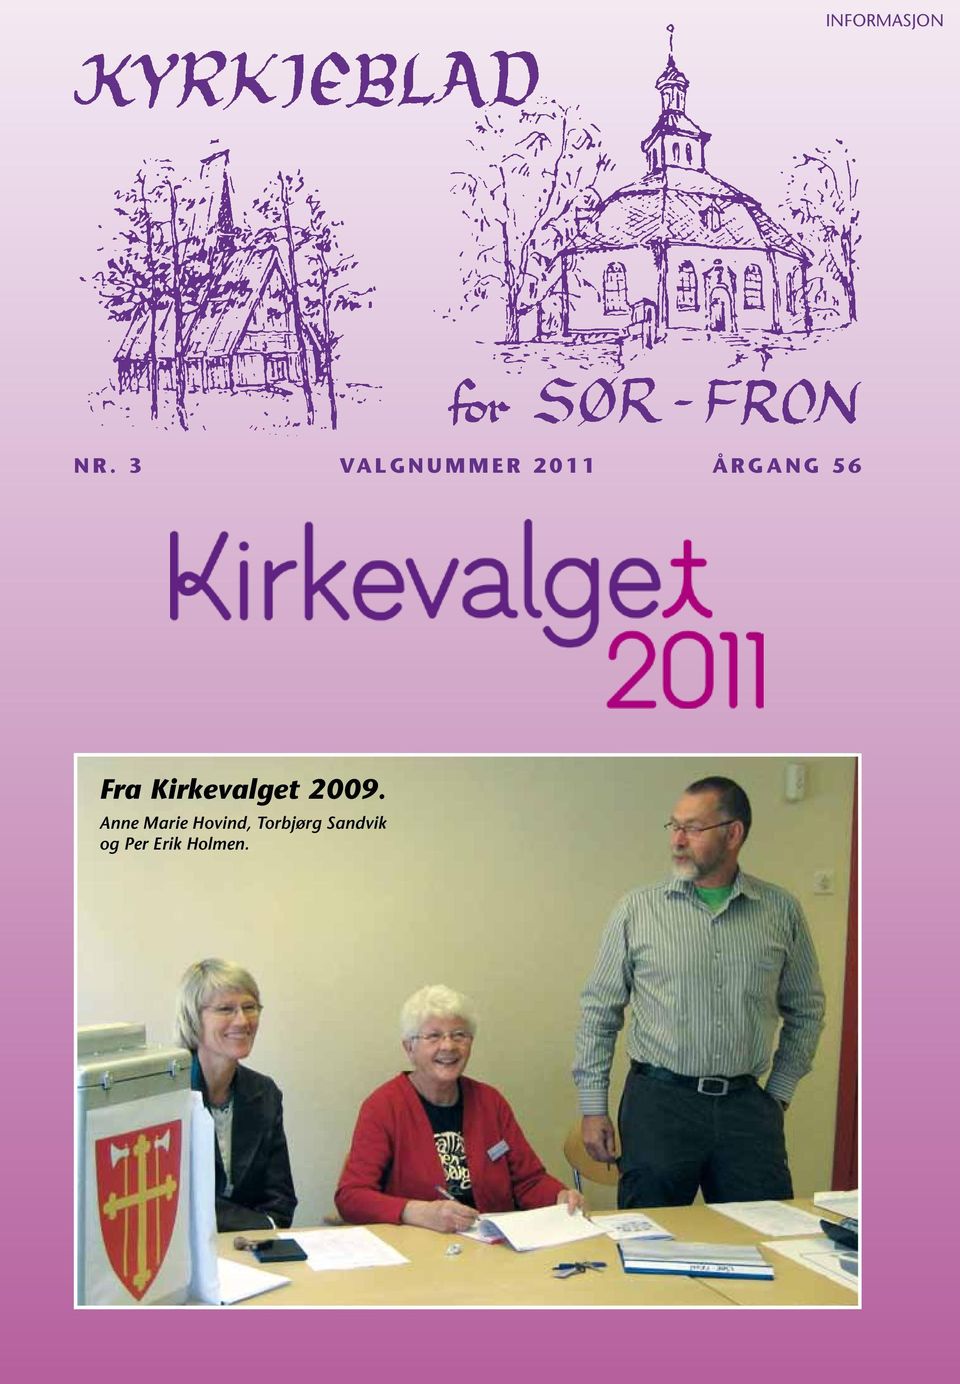 Fra Kirkevalget 2009.